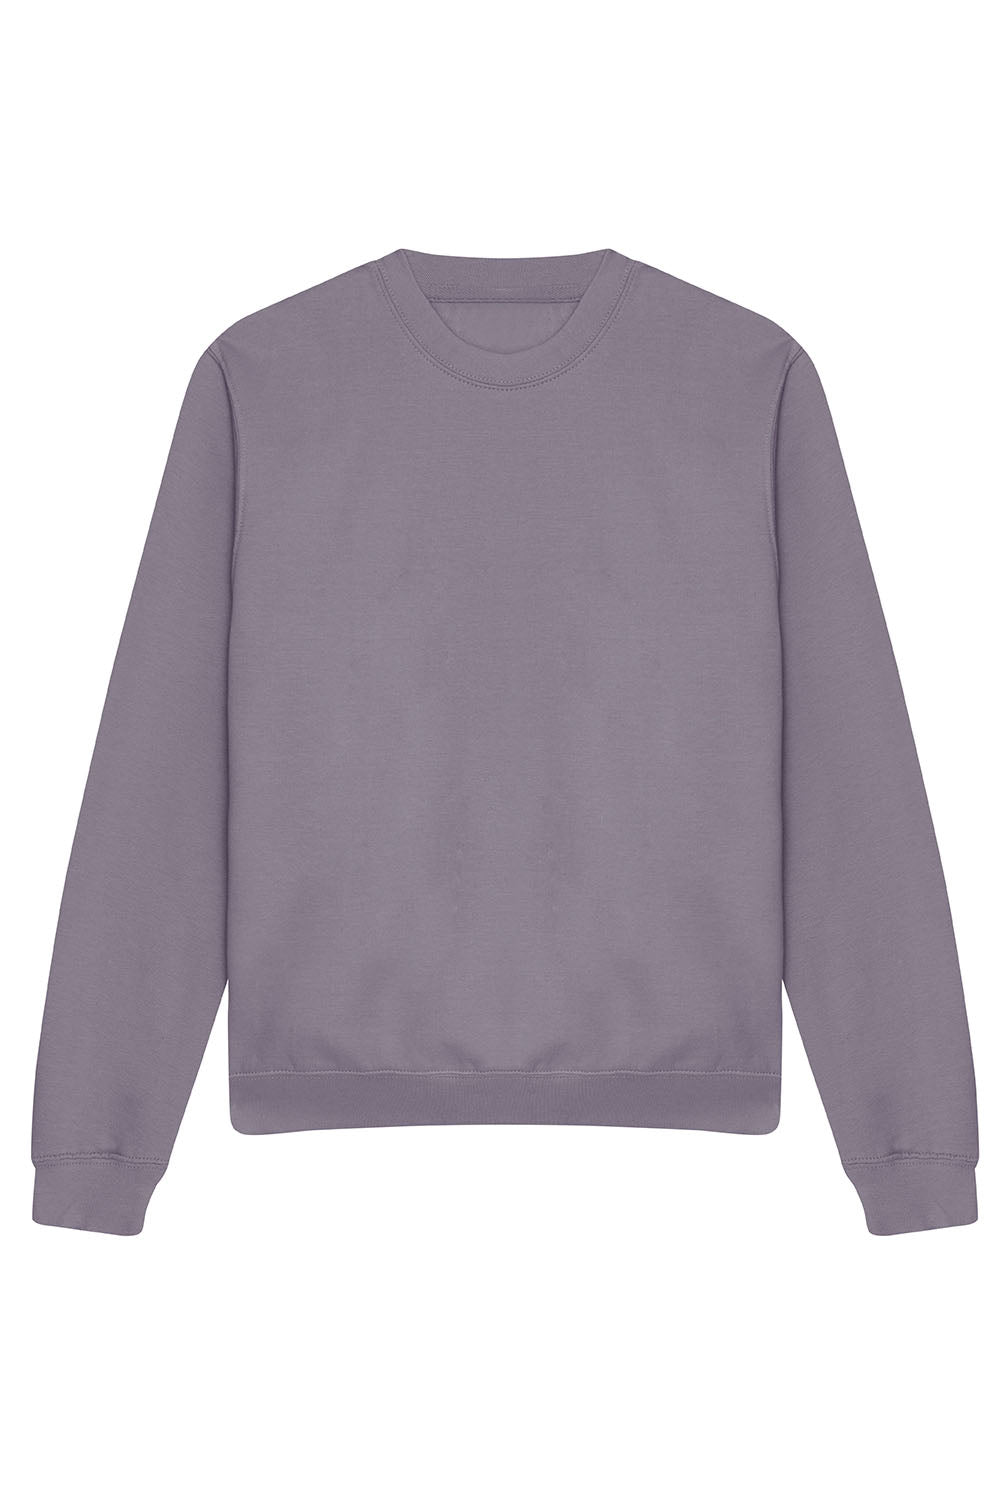 Unisex Crewneck Custom Printed Sweatshirt